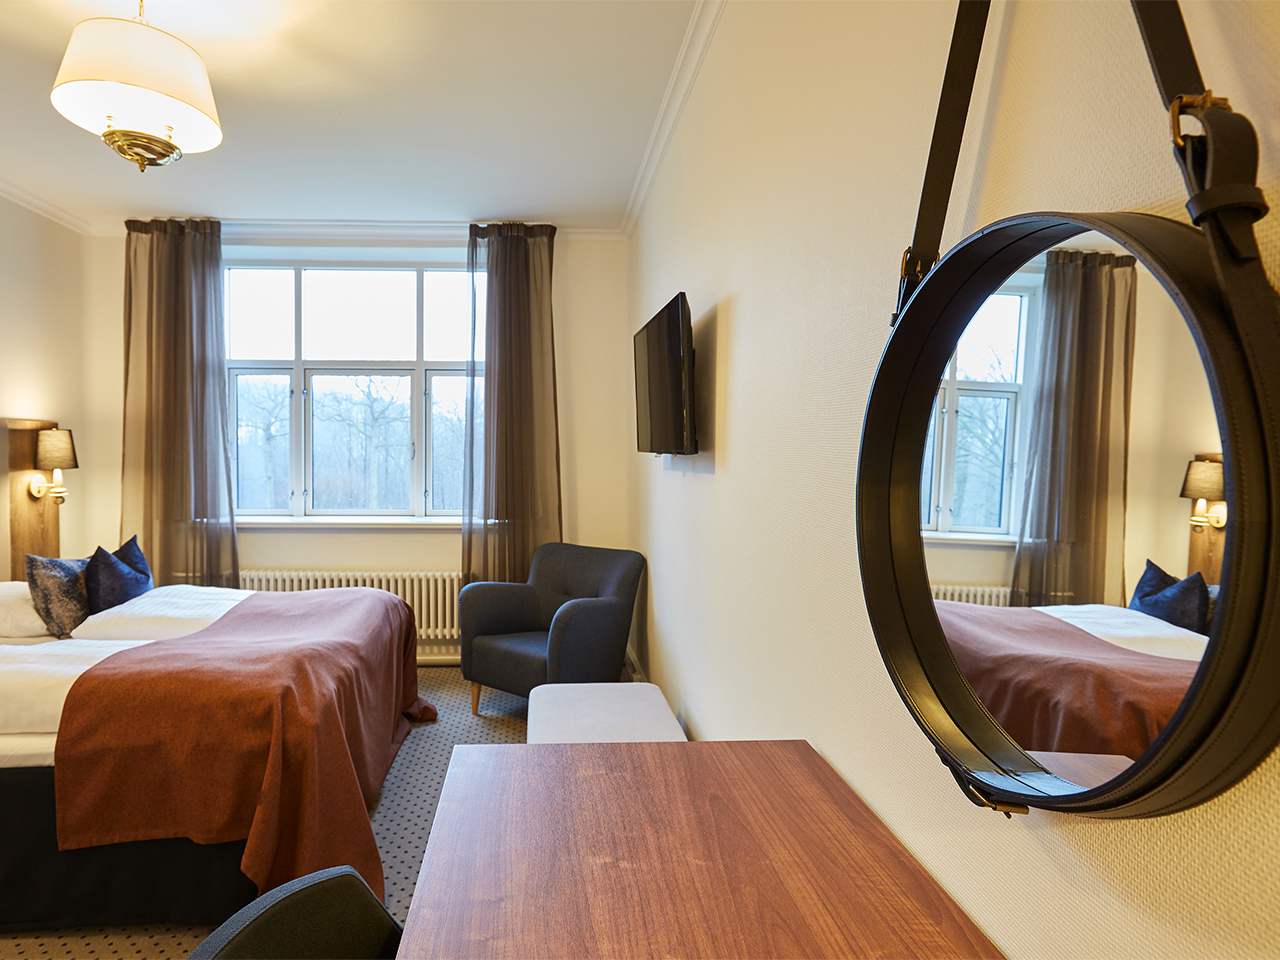 Soveværelse i suite med udsigt